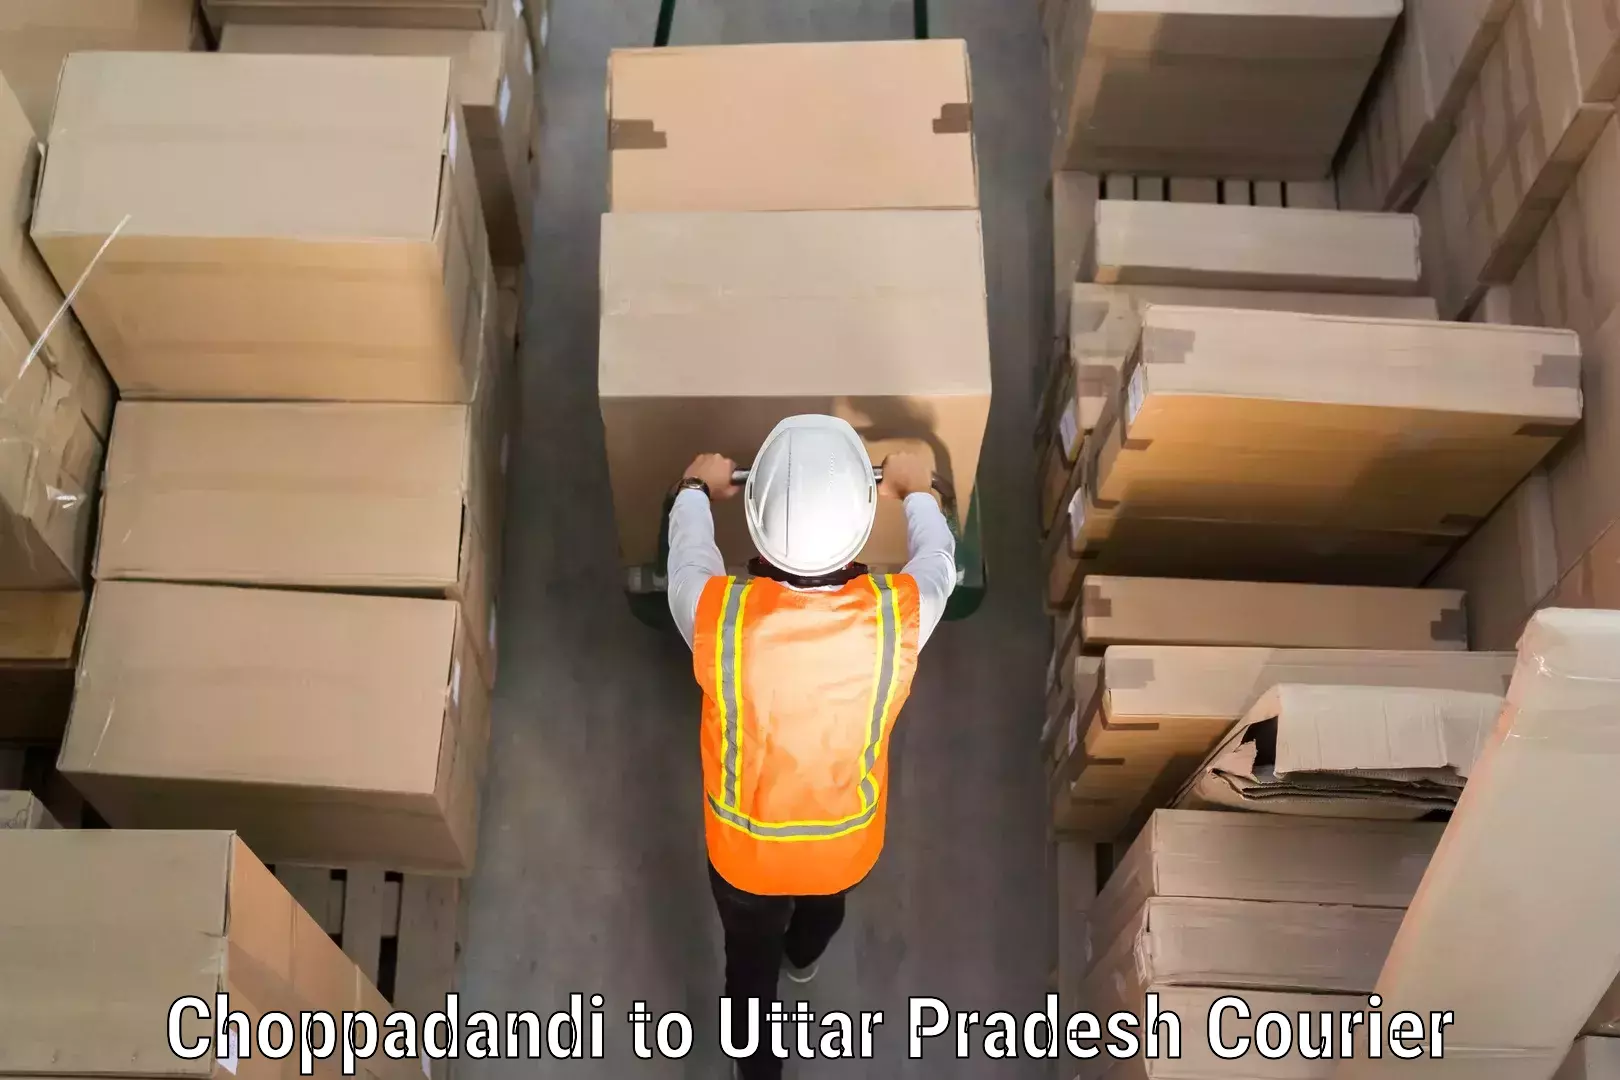 Baggage shipping experts Choppadandi to Uttar Pradesh